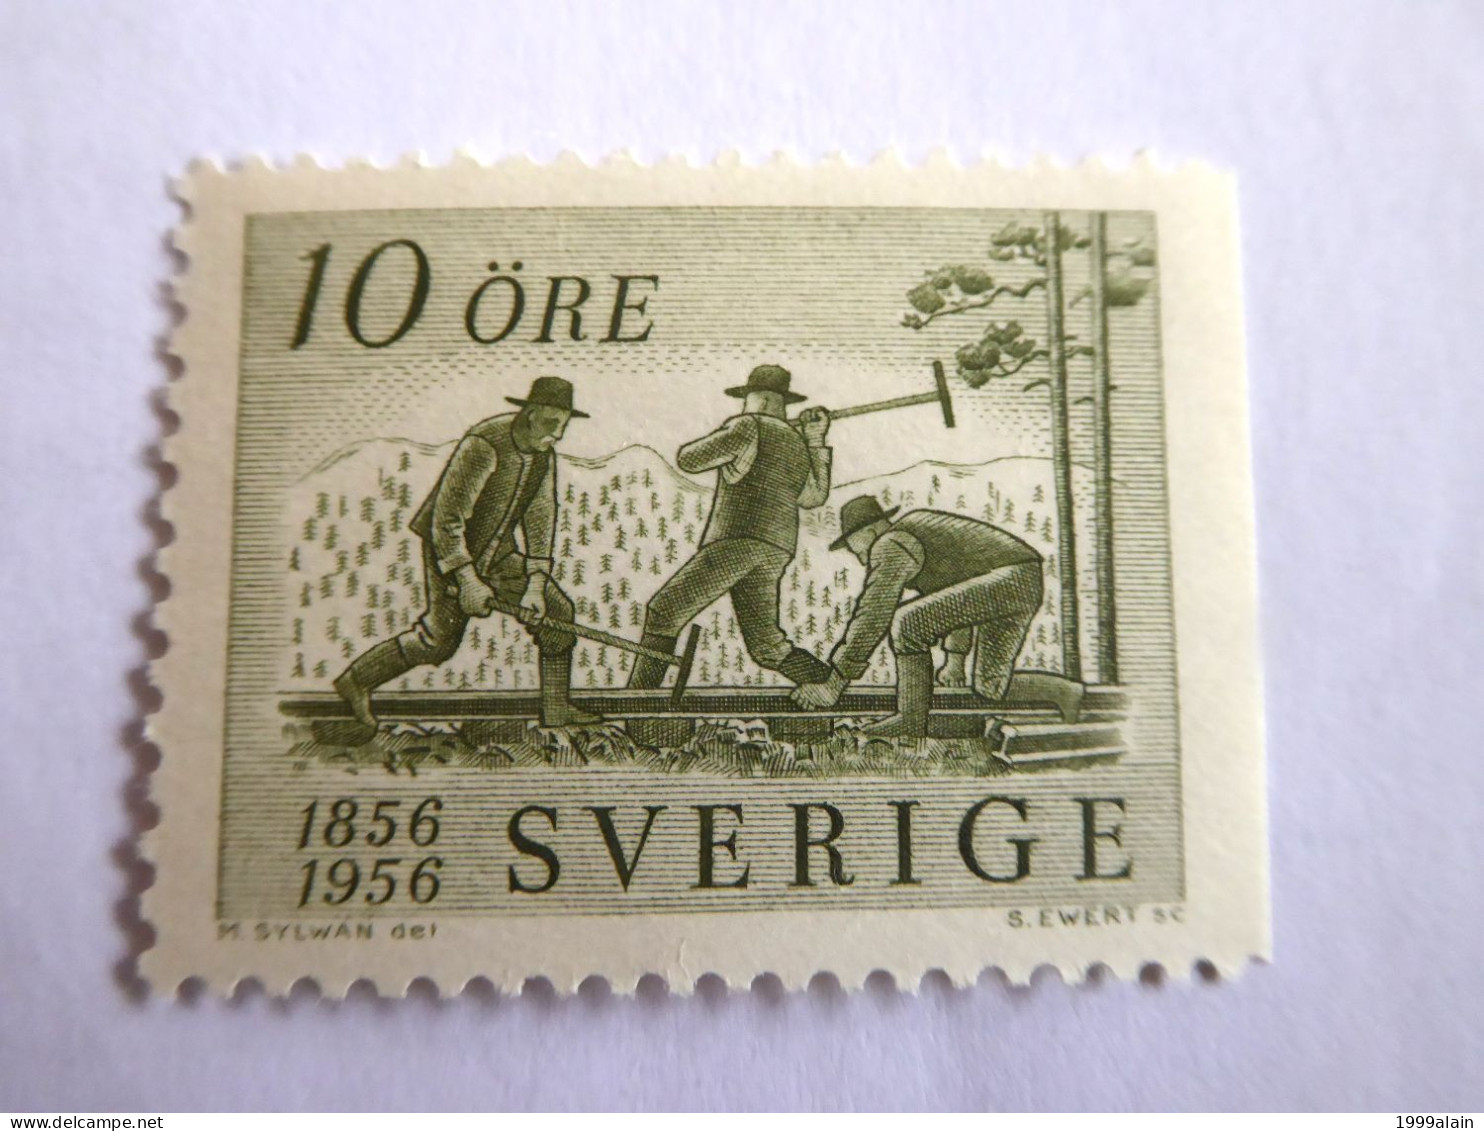 SUEDE - SWEDEN - 1956 YVERT N° 411a MNH** - Ungebraucht